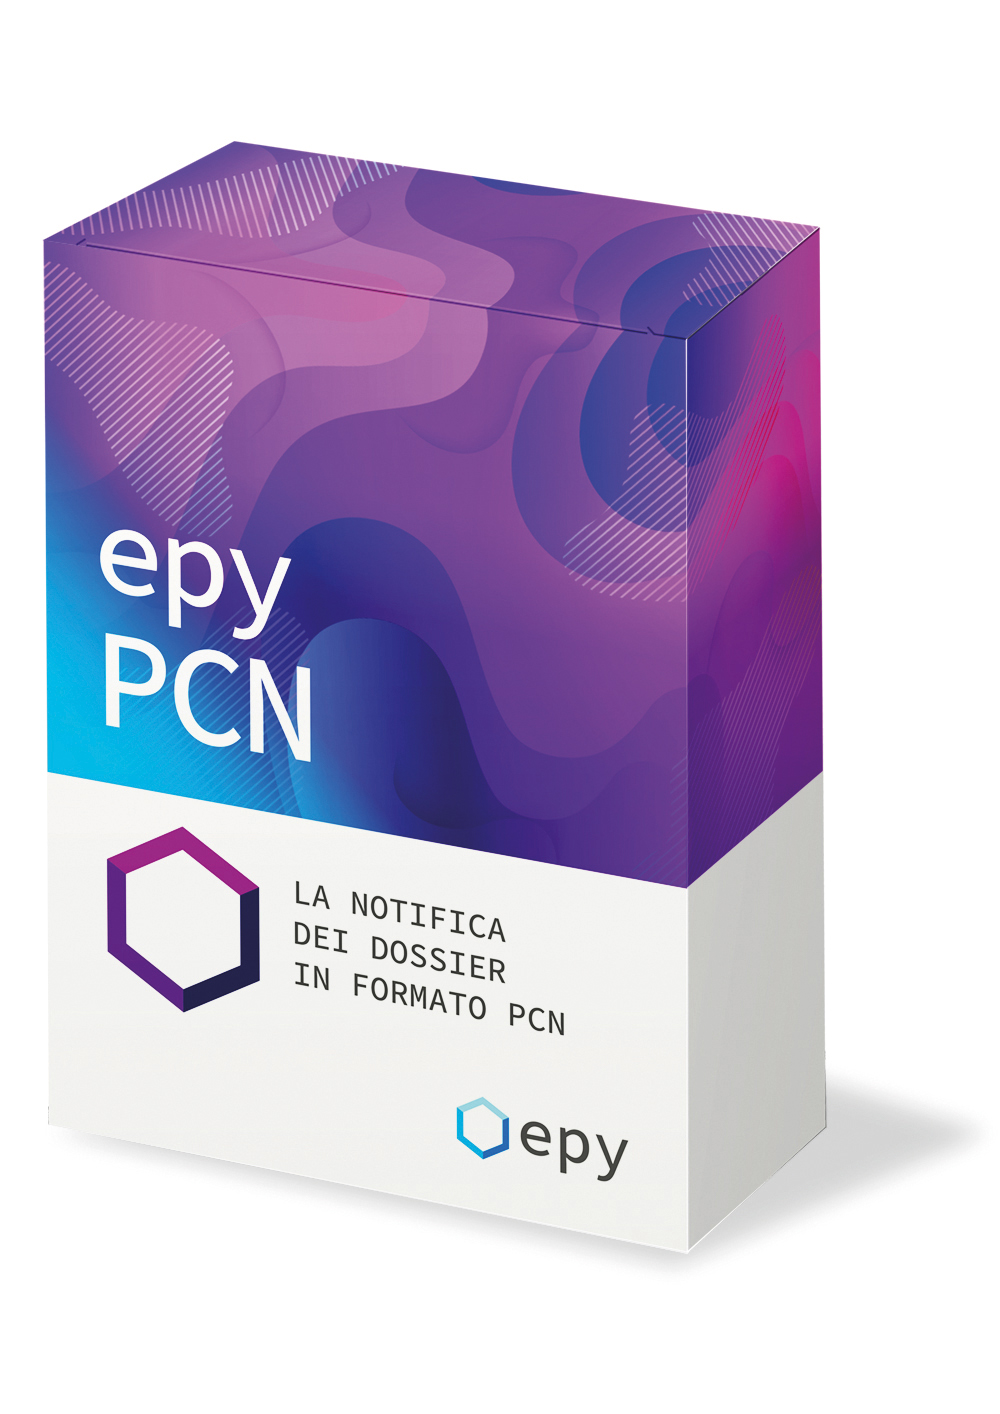 Epy PCN